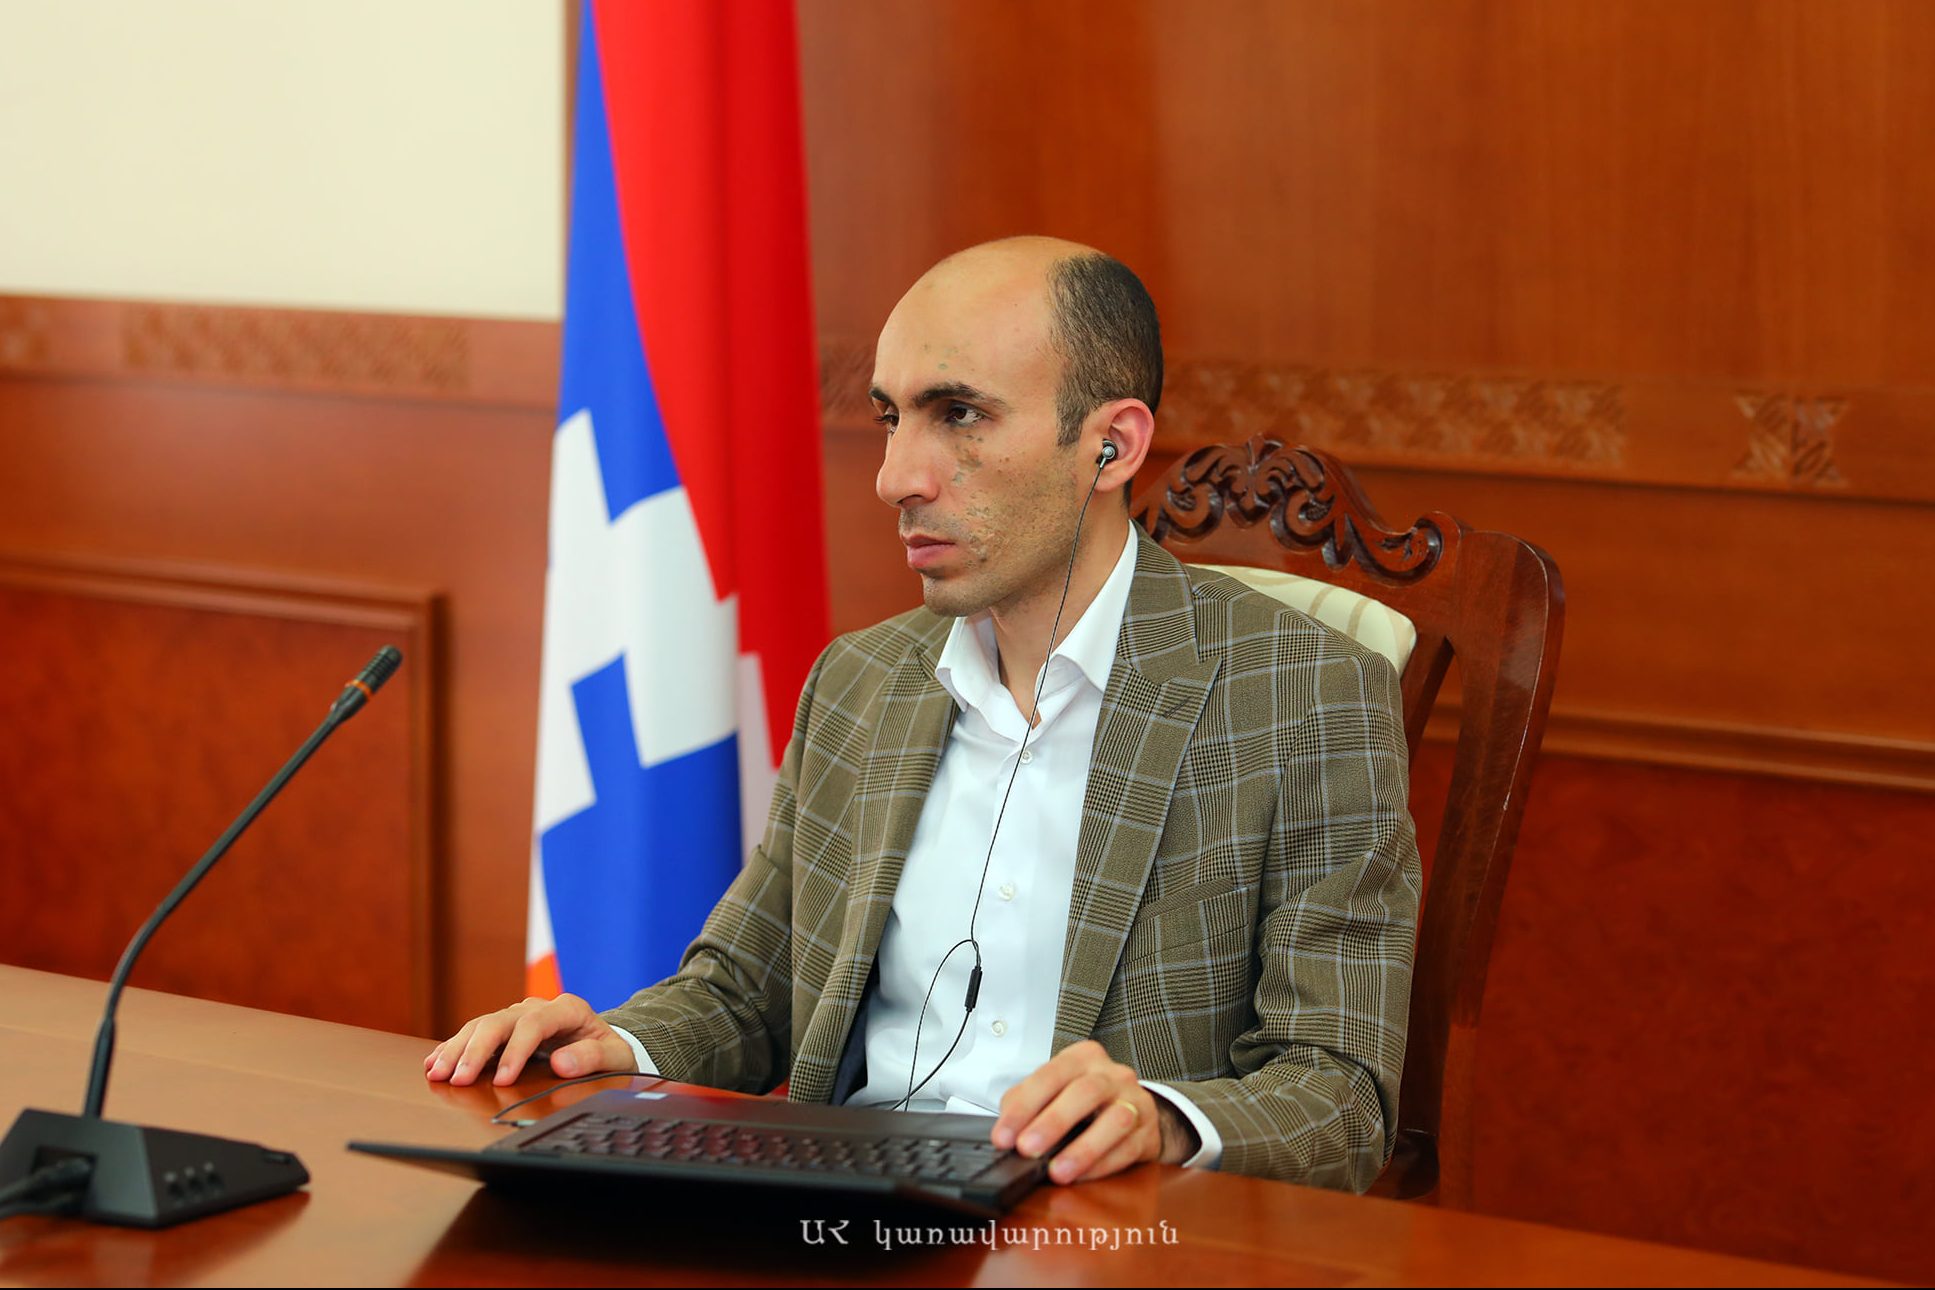 Արցախի և Ադրբեջանի ներկայացուցիչների հանդիպումից հետո ադրբեջանական կողմն այն ներկայացրել է որպես իր իսկ քաղաքացիների հետ երկխոսությու․ Բեգլարյան